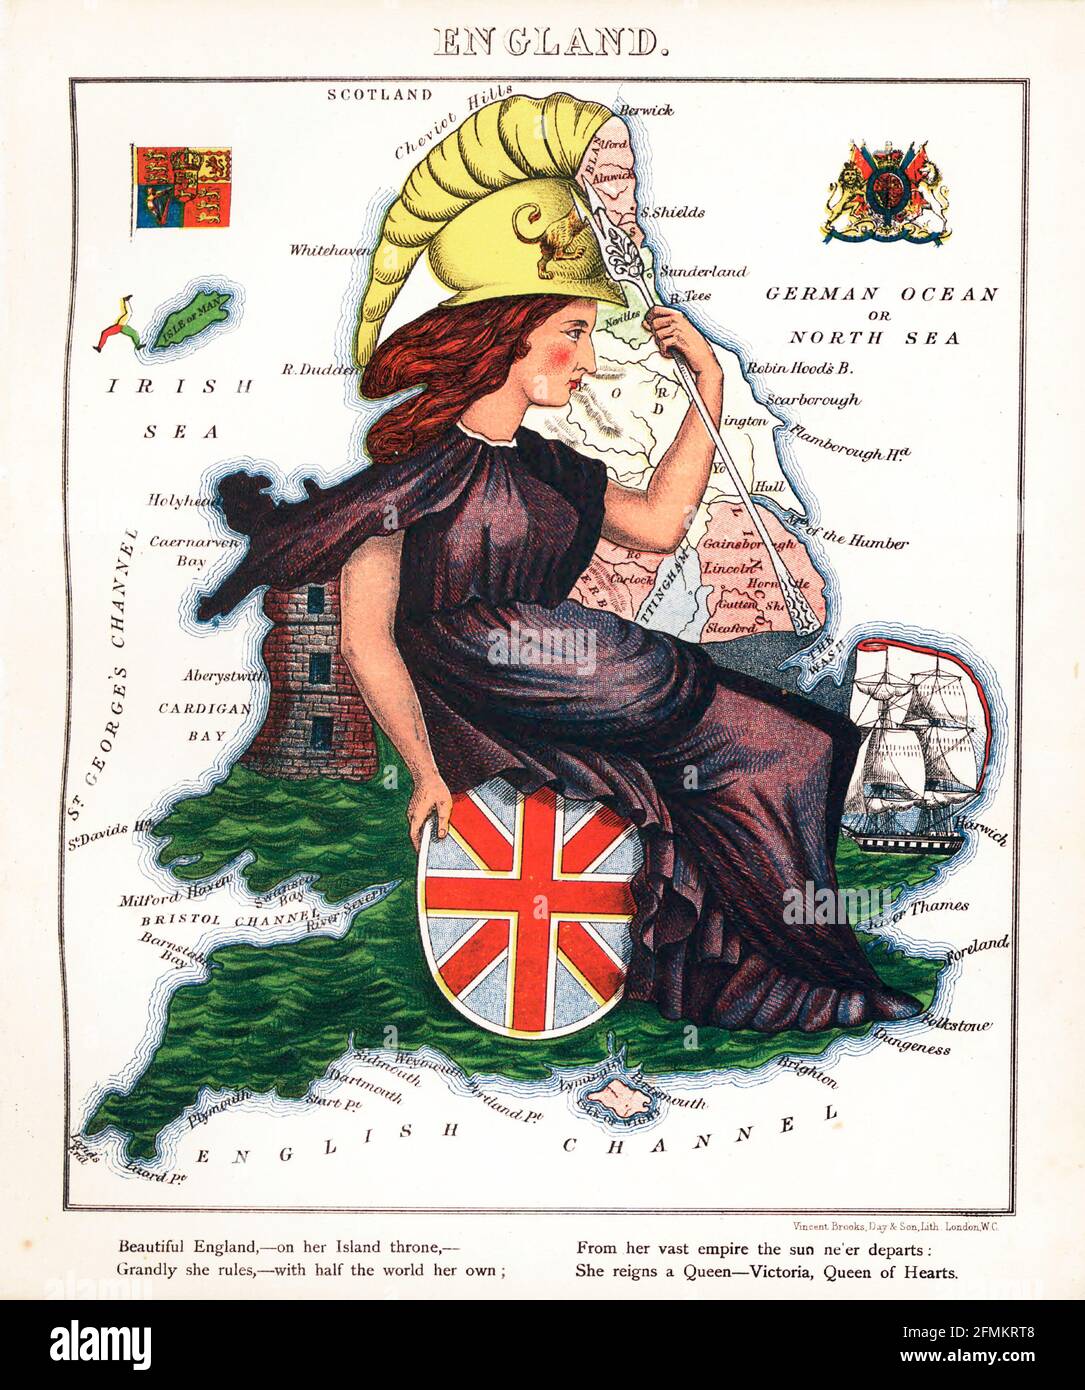 Inglaterra – Diversión geográfica. Mapa satírico / cartográfico ilustrado. Publicado en Londres por la firma de Hodder y Stoughton en 1869. Foto de stock